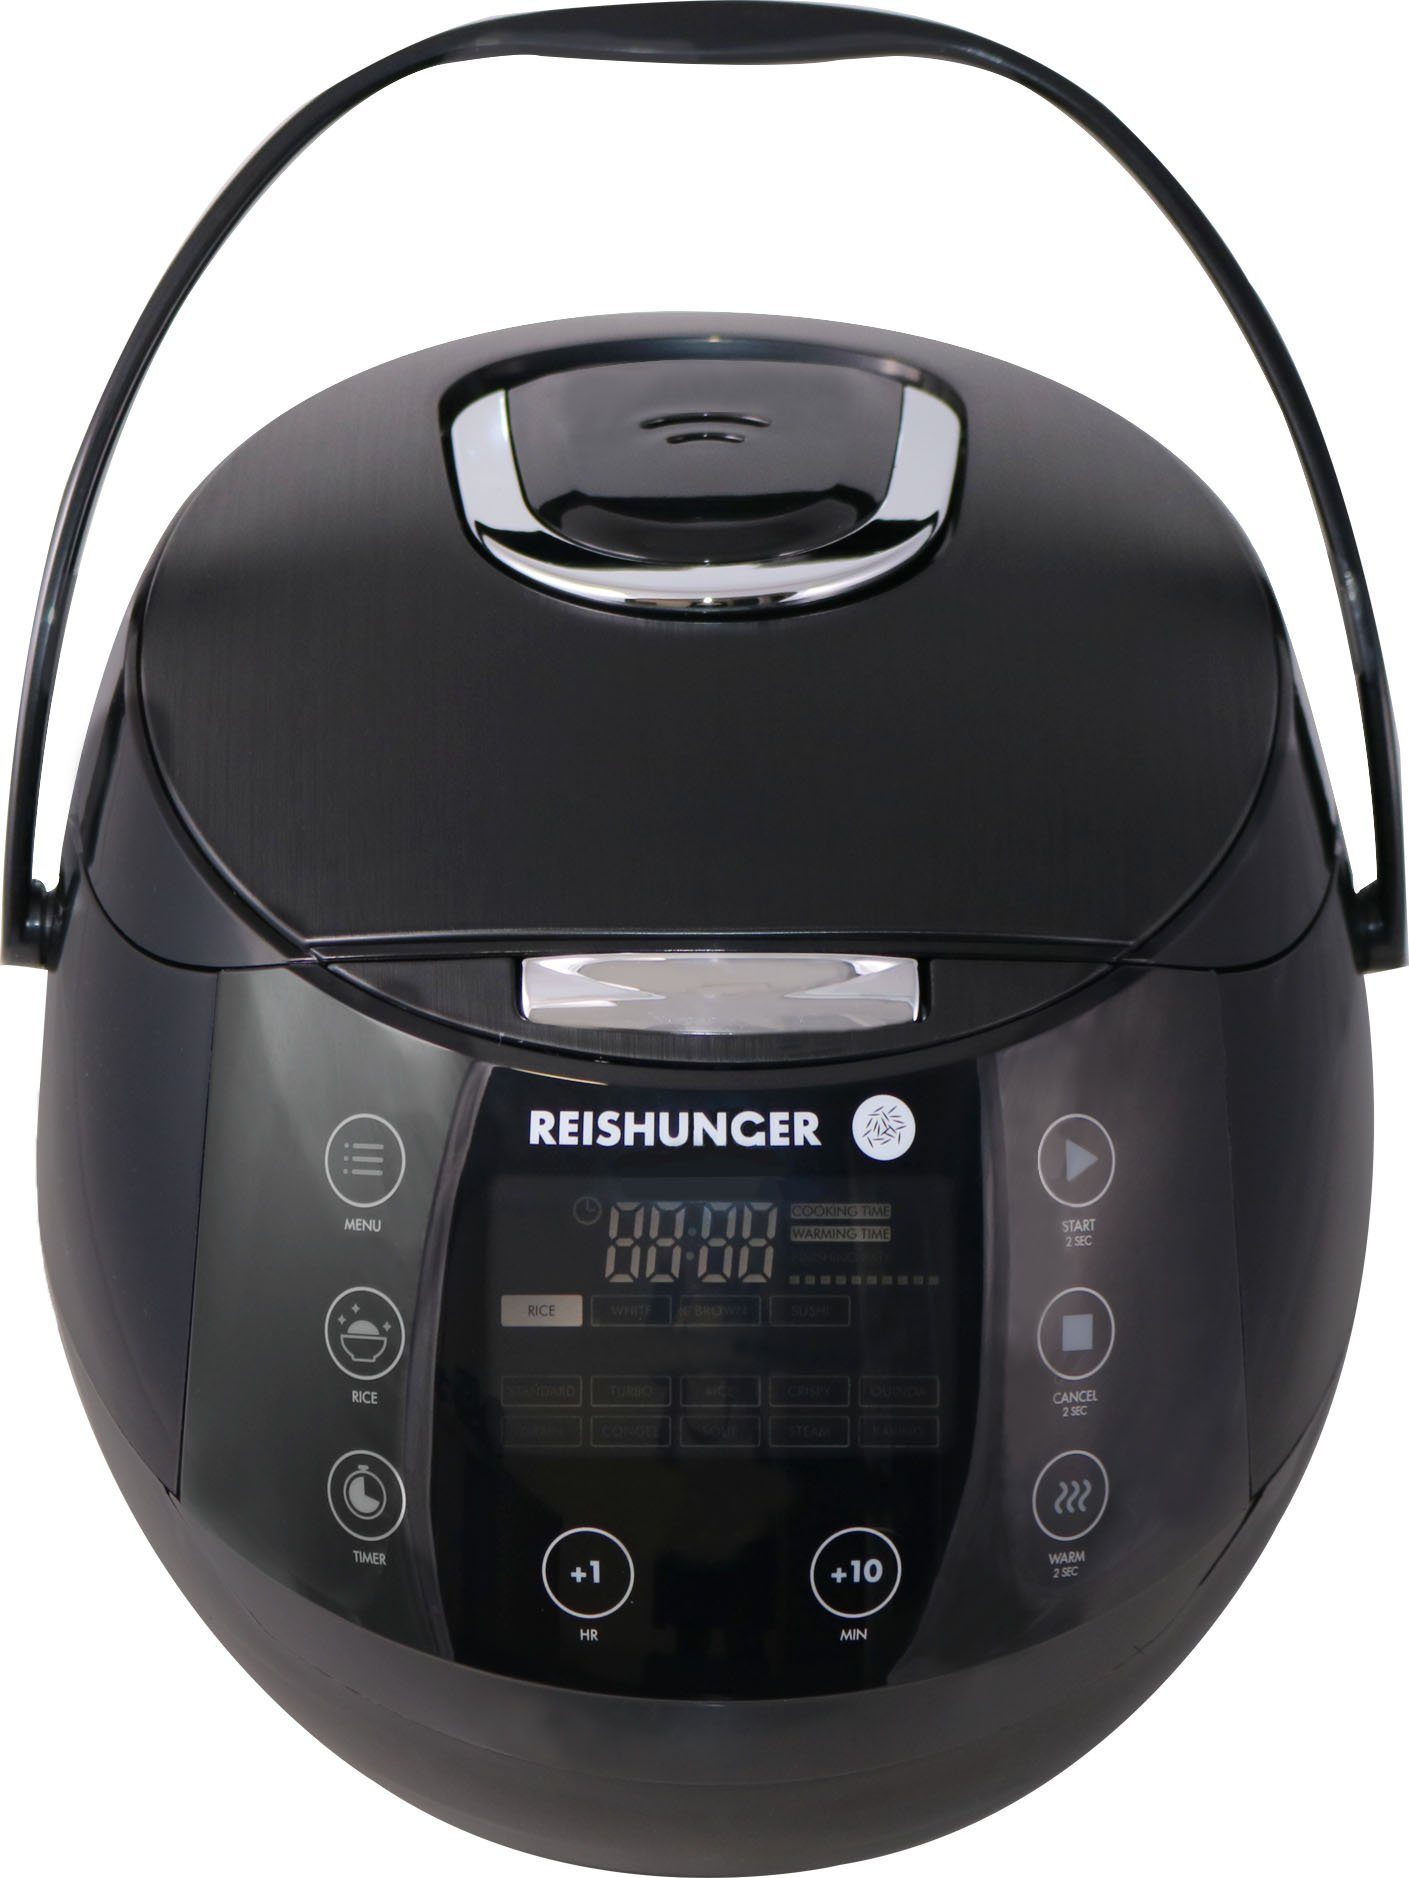 schwarz - Reishunger Reiskocher 538-DRK-B Reiskocher -